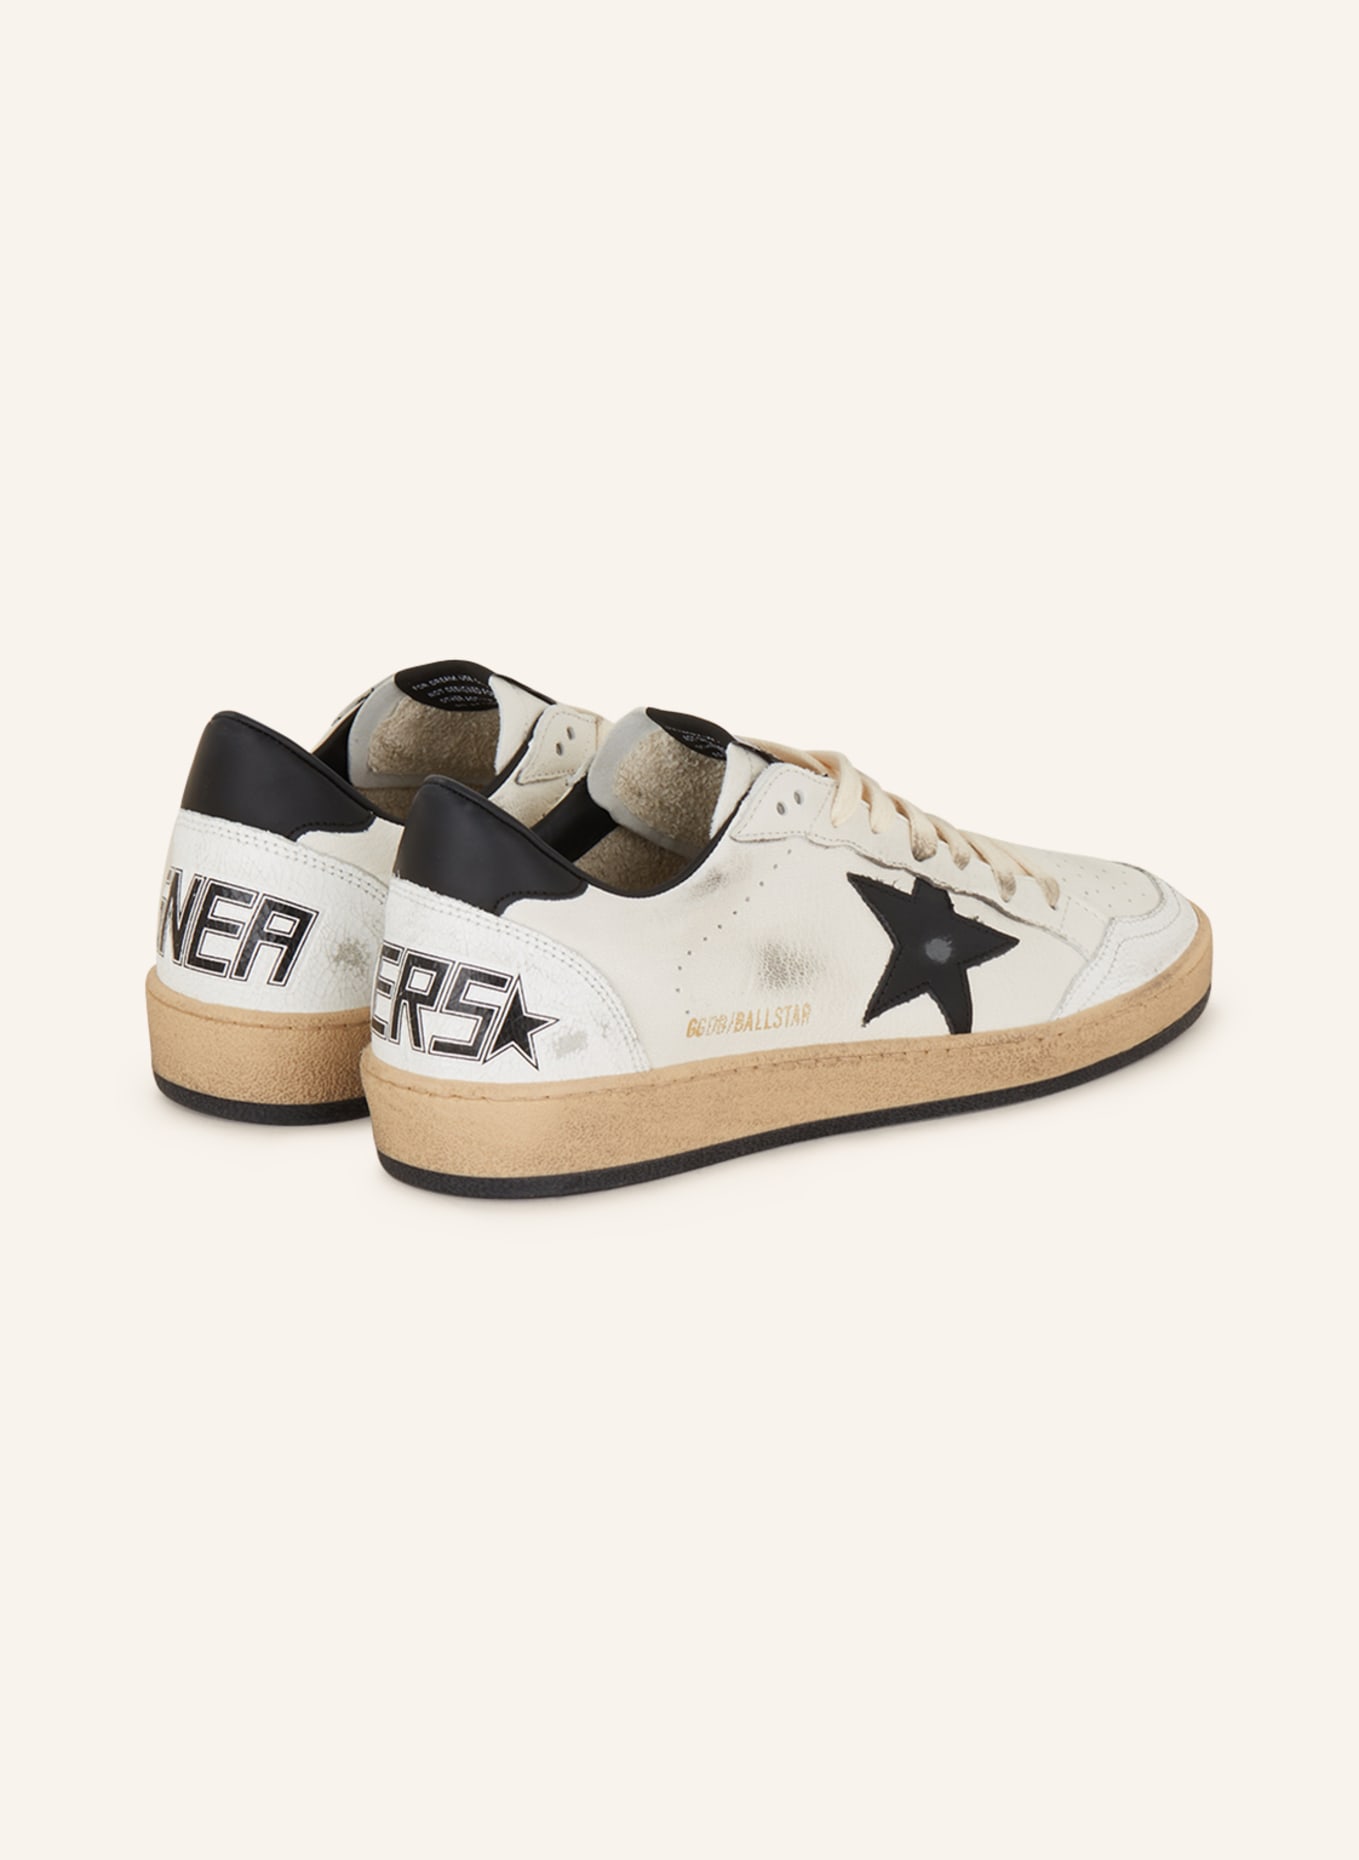 GOLDEN GOOSE Sneaker BALL STAR, Farbe: WEISS/ SCHWARZ (Bild 2)